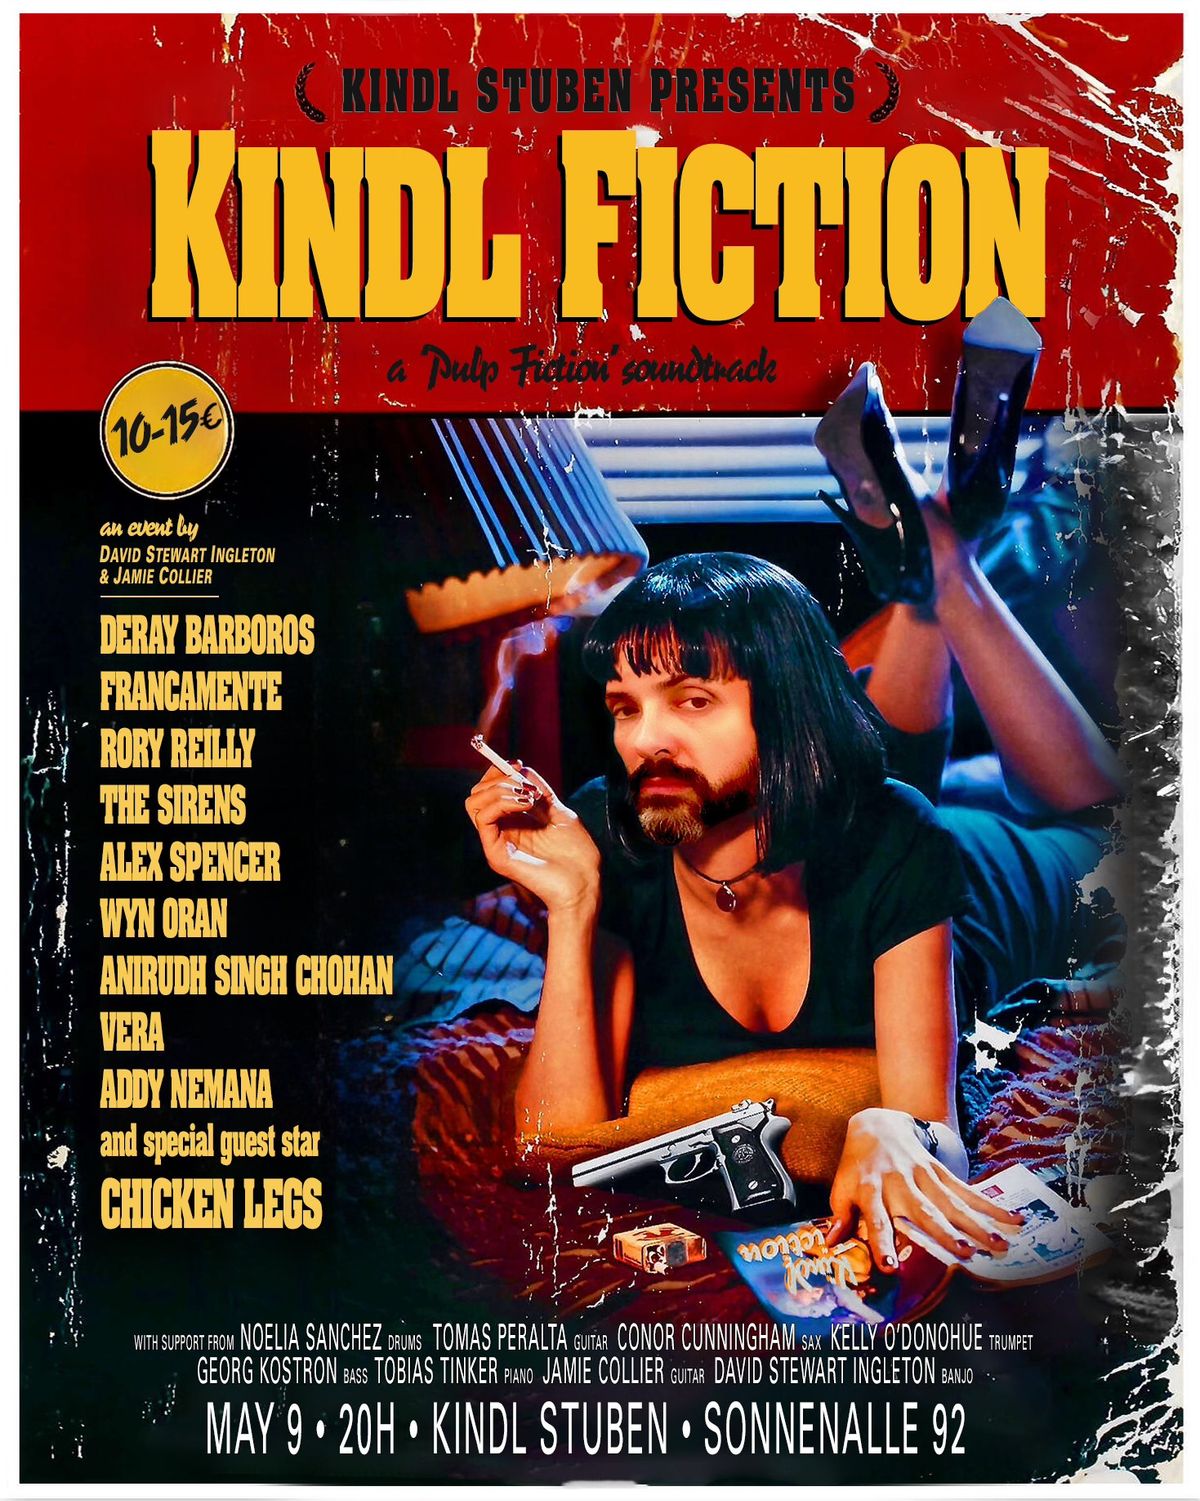 Kindl Fiction - a Pulp Fiction Soundtrack 